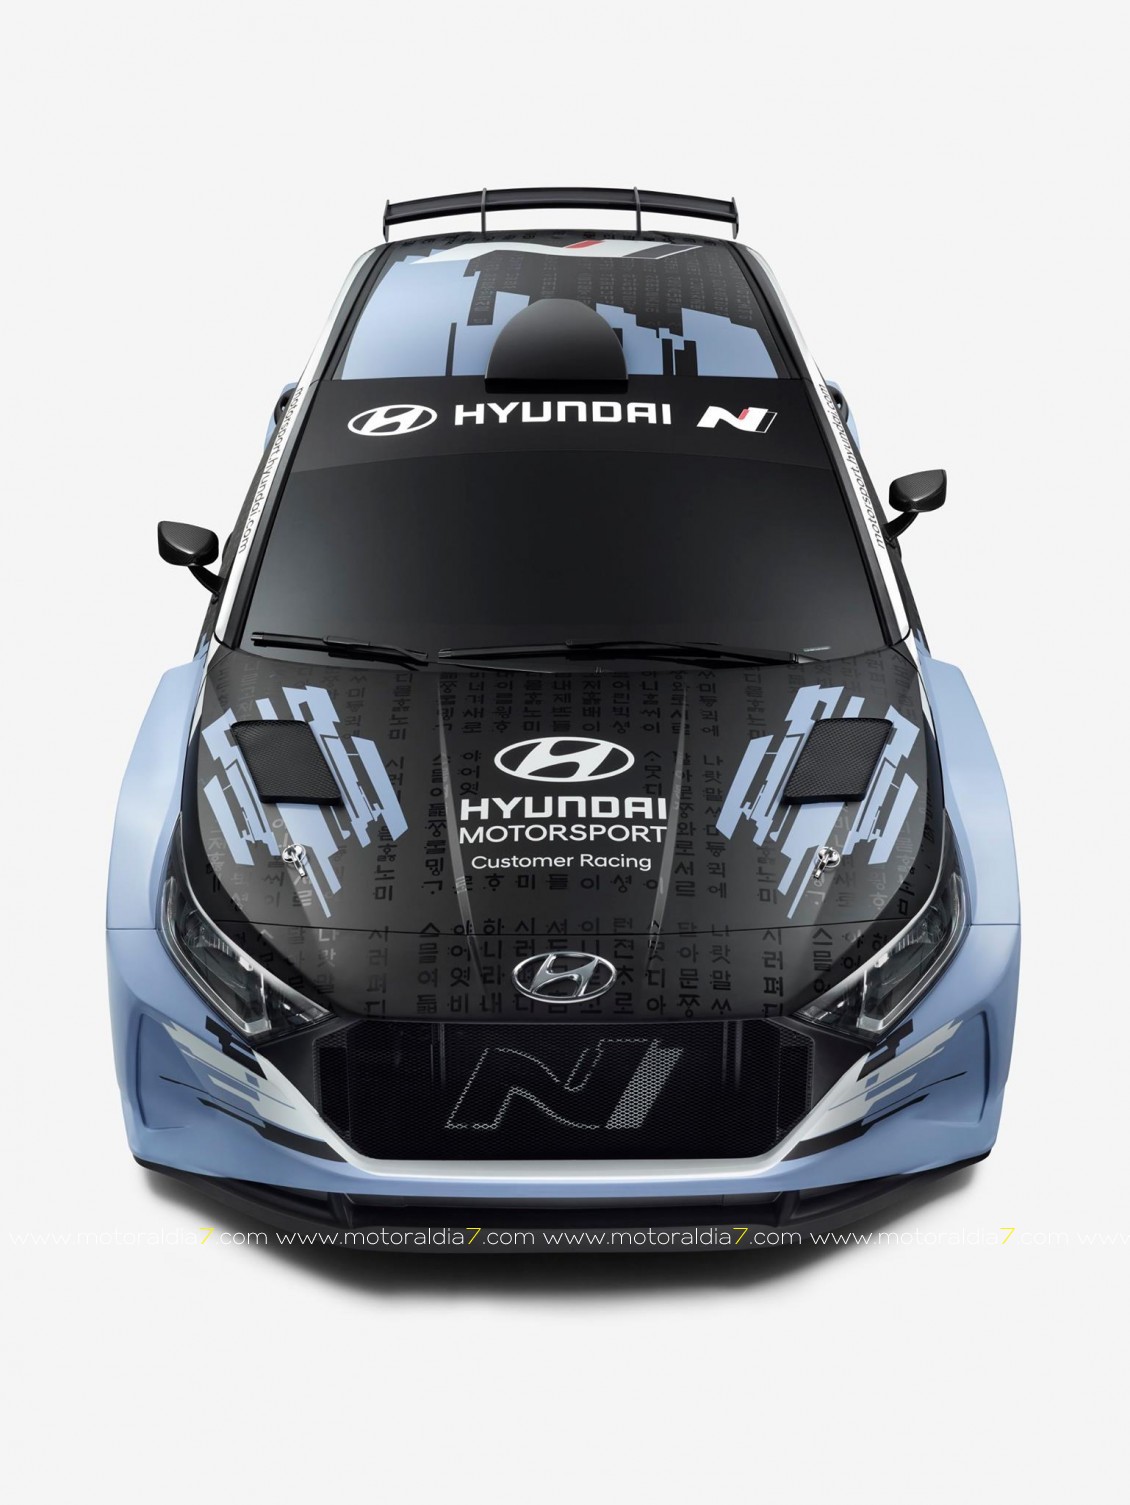 Llega el Hyundai i20 Rally2